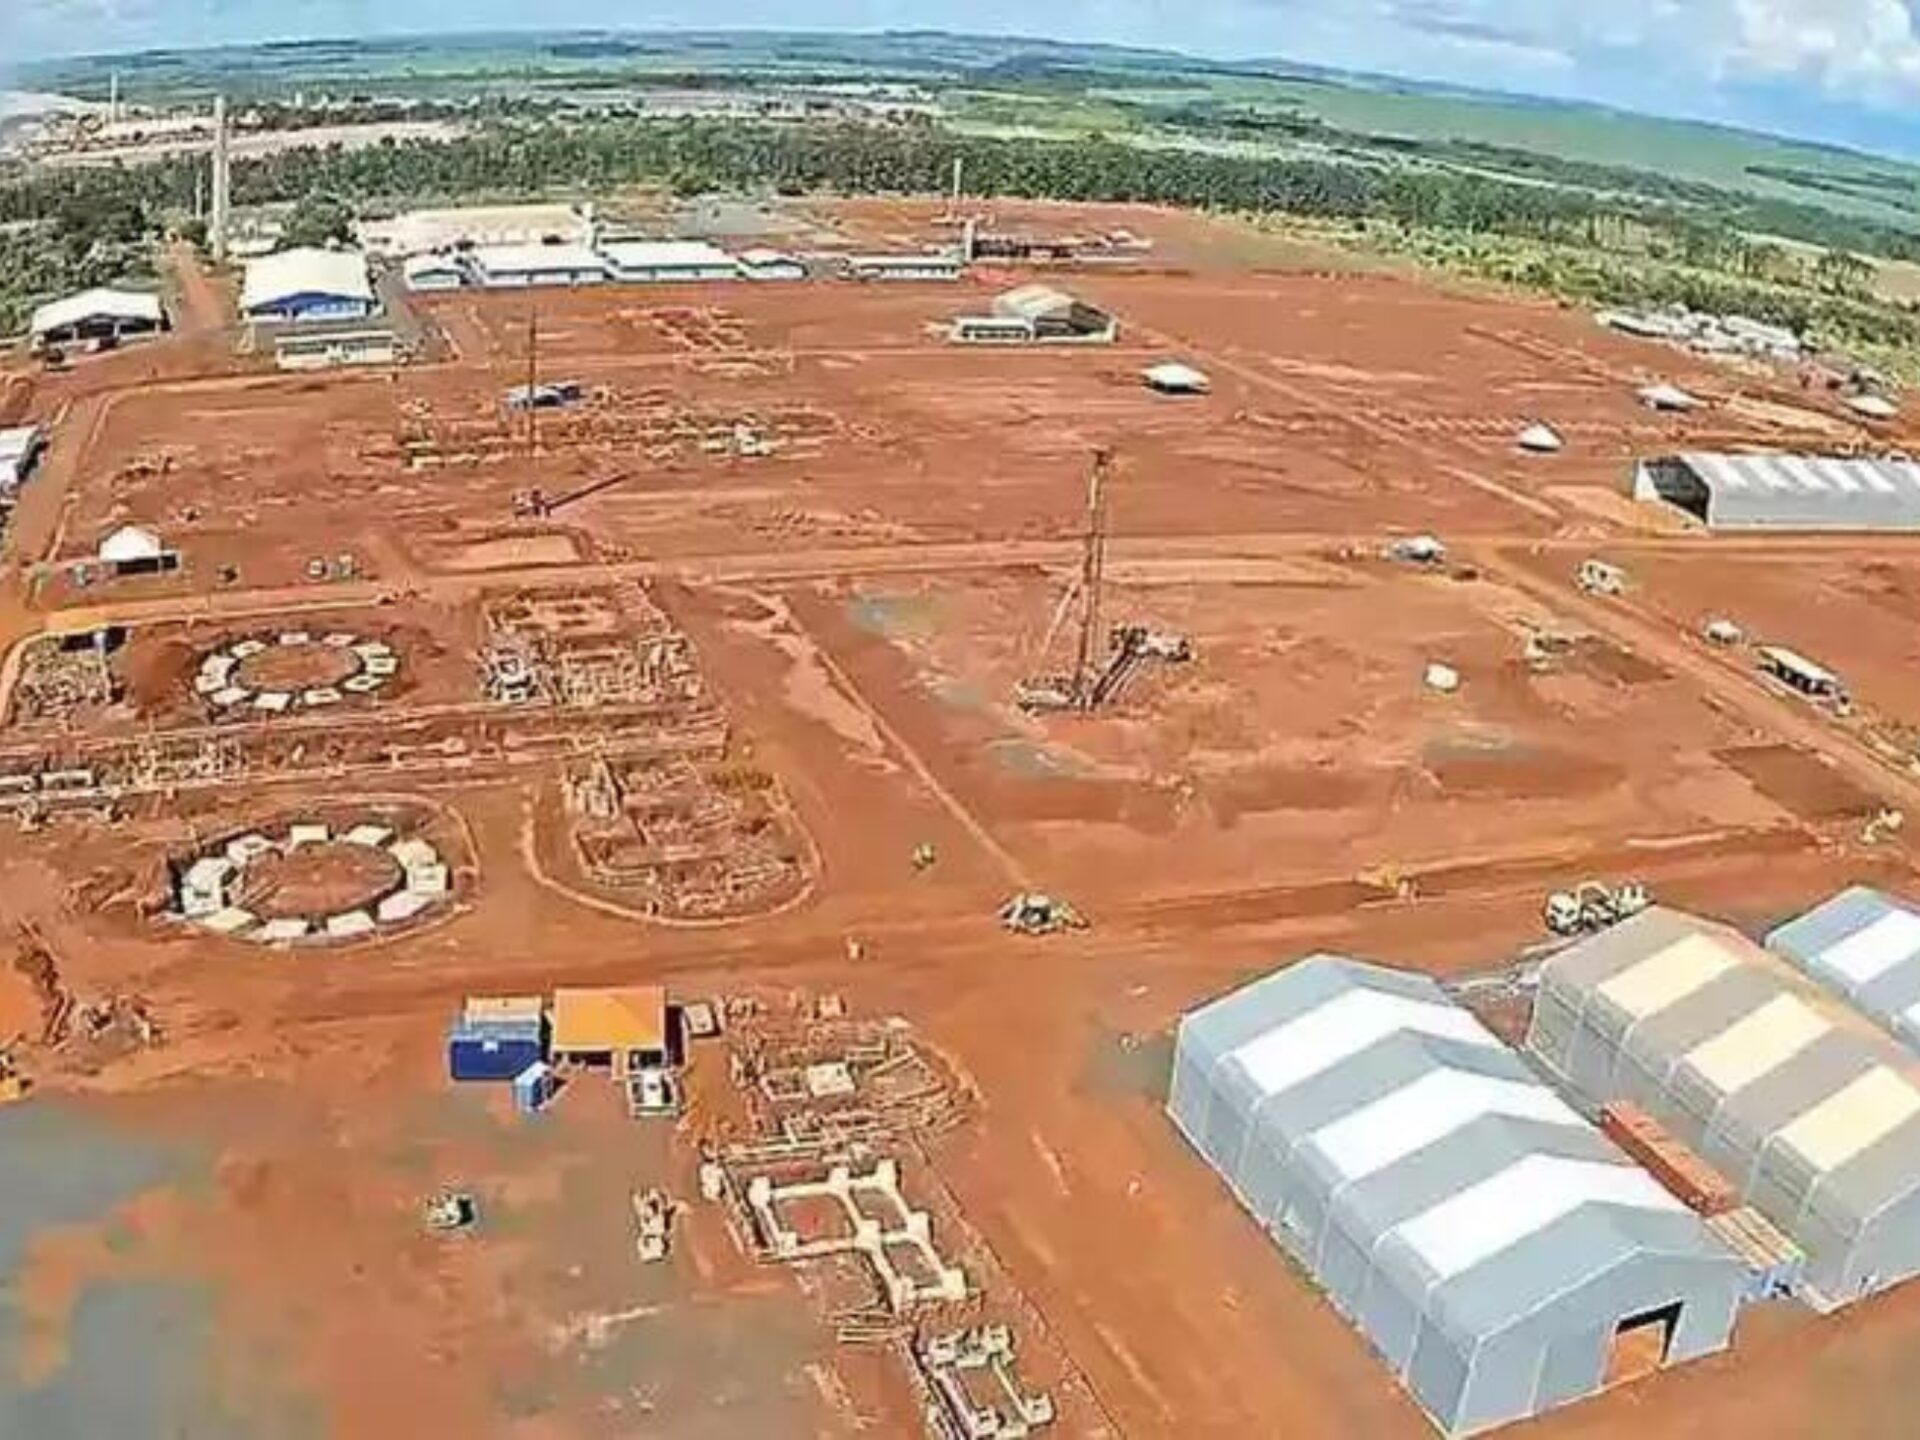 Fábrica de fertilizantes em Minas Gerais terá investimento de R$ 5 bilhões e 2 mil empregos gerados